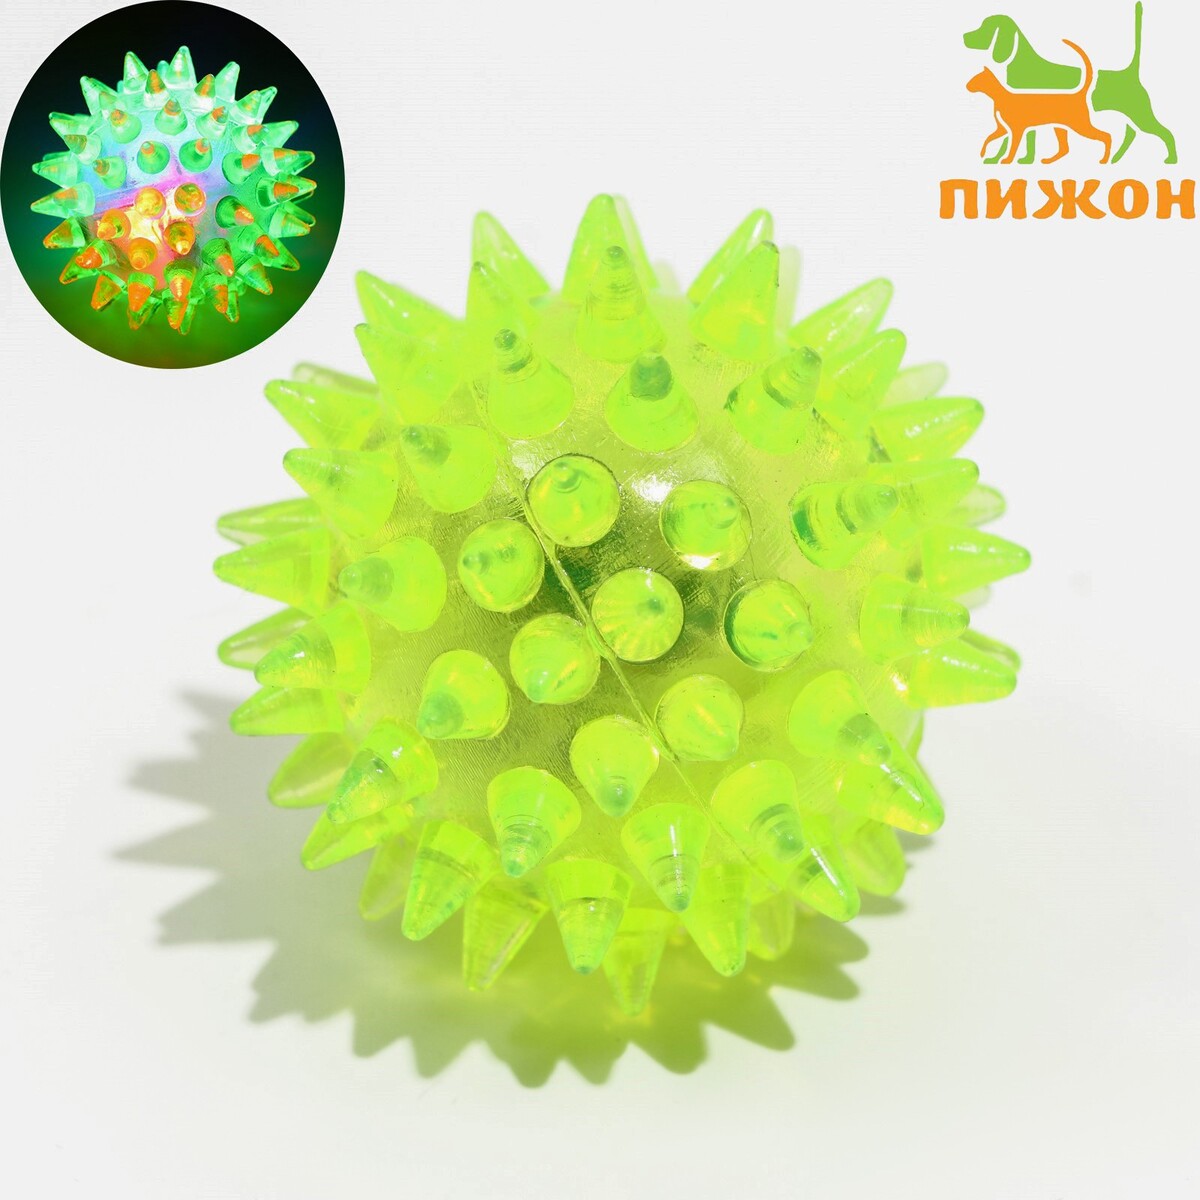 Мяч светящийся для животных малый, tpr, 4,5 см, жёлтый Пижон 01222105 - фото 1